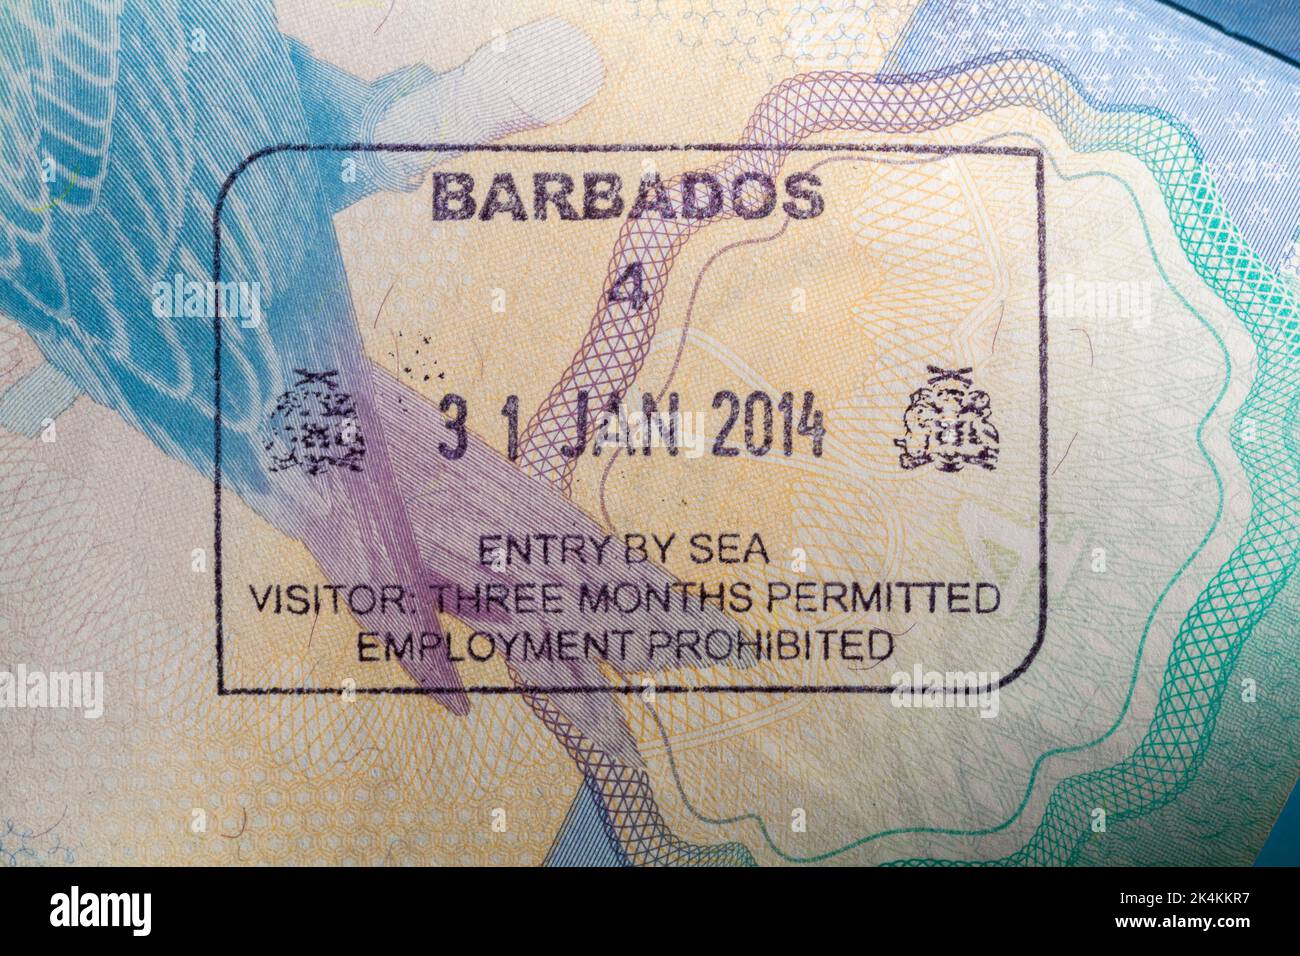 Ingresso alle Barbados con visitatori del mare tre mesi di occupazione permesso timbro vietato nel passaporto britannico 31 gennaio 2014 Foto Stock